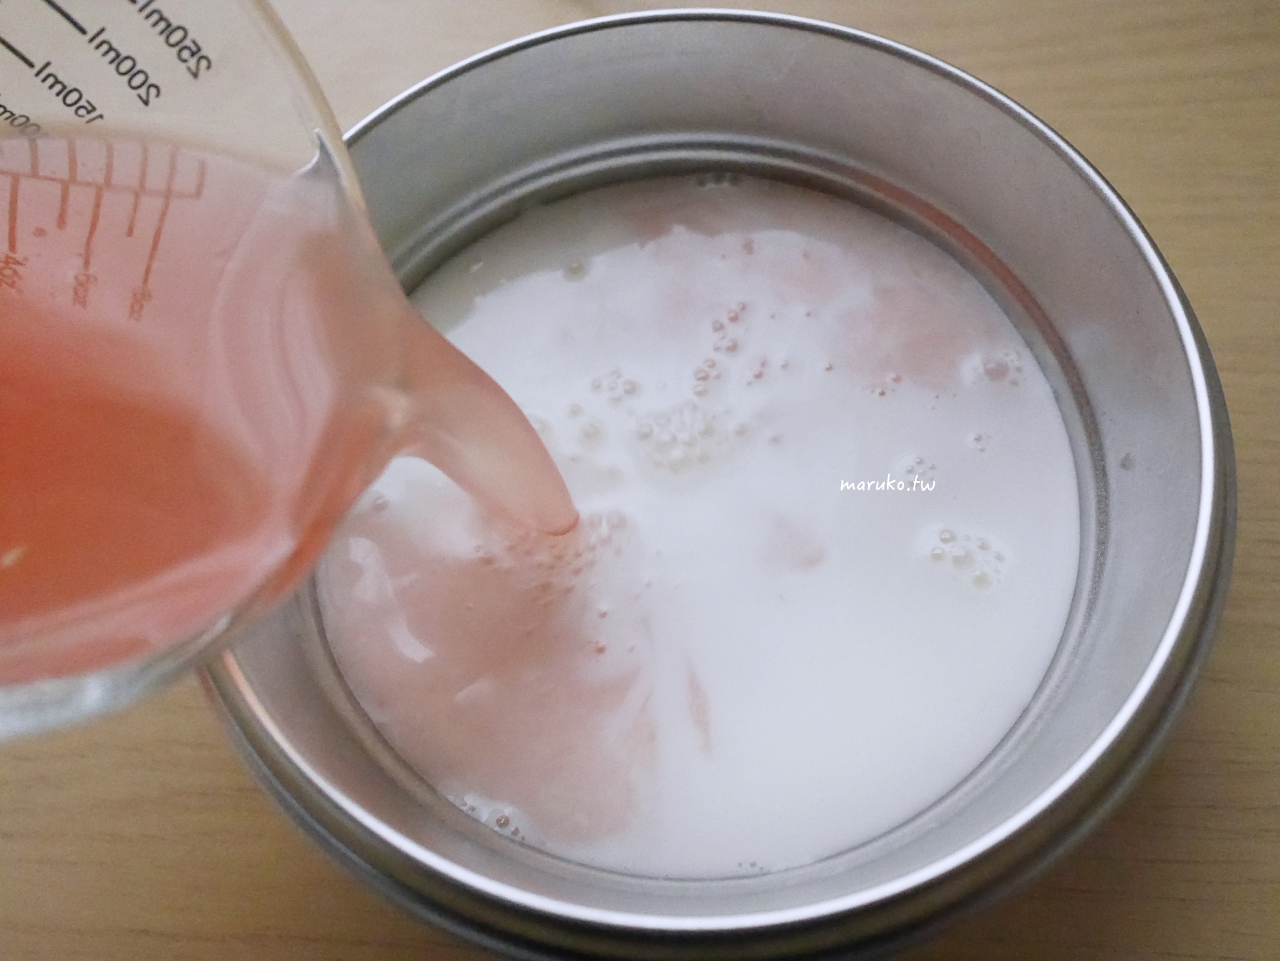 【食譜】葡萄柚乳酸冰沙 不用刨冰機的水果冰沙做法，可爾必思乳酸菌飲運用！ @Maruko與美食有個約會